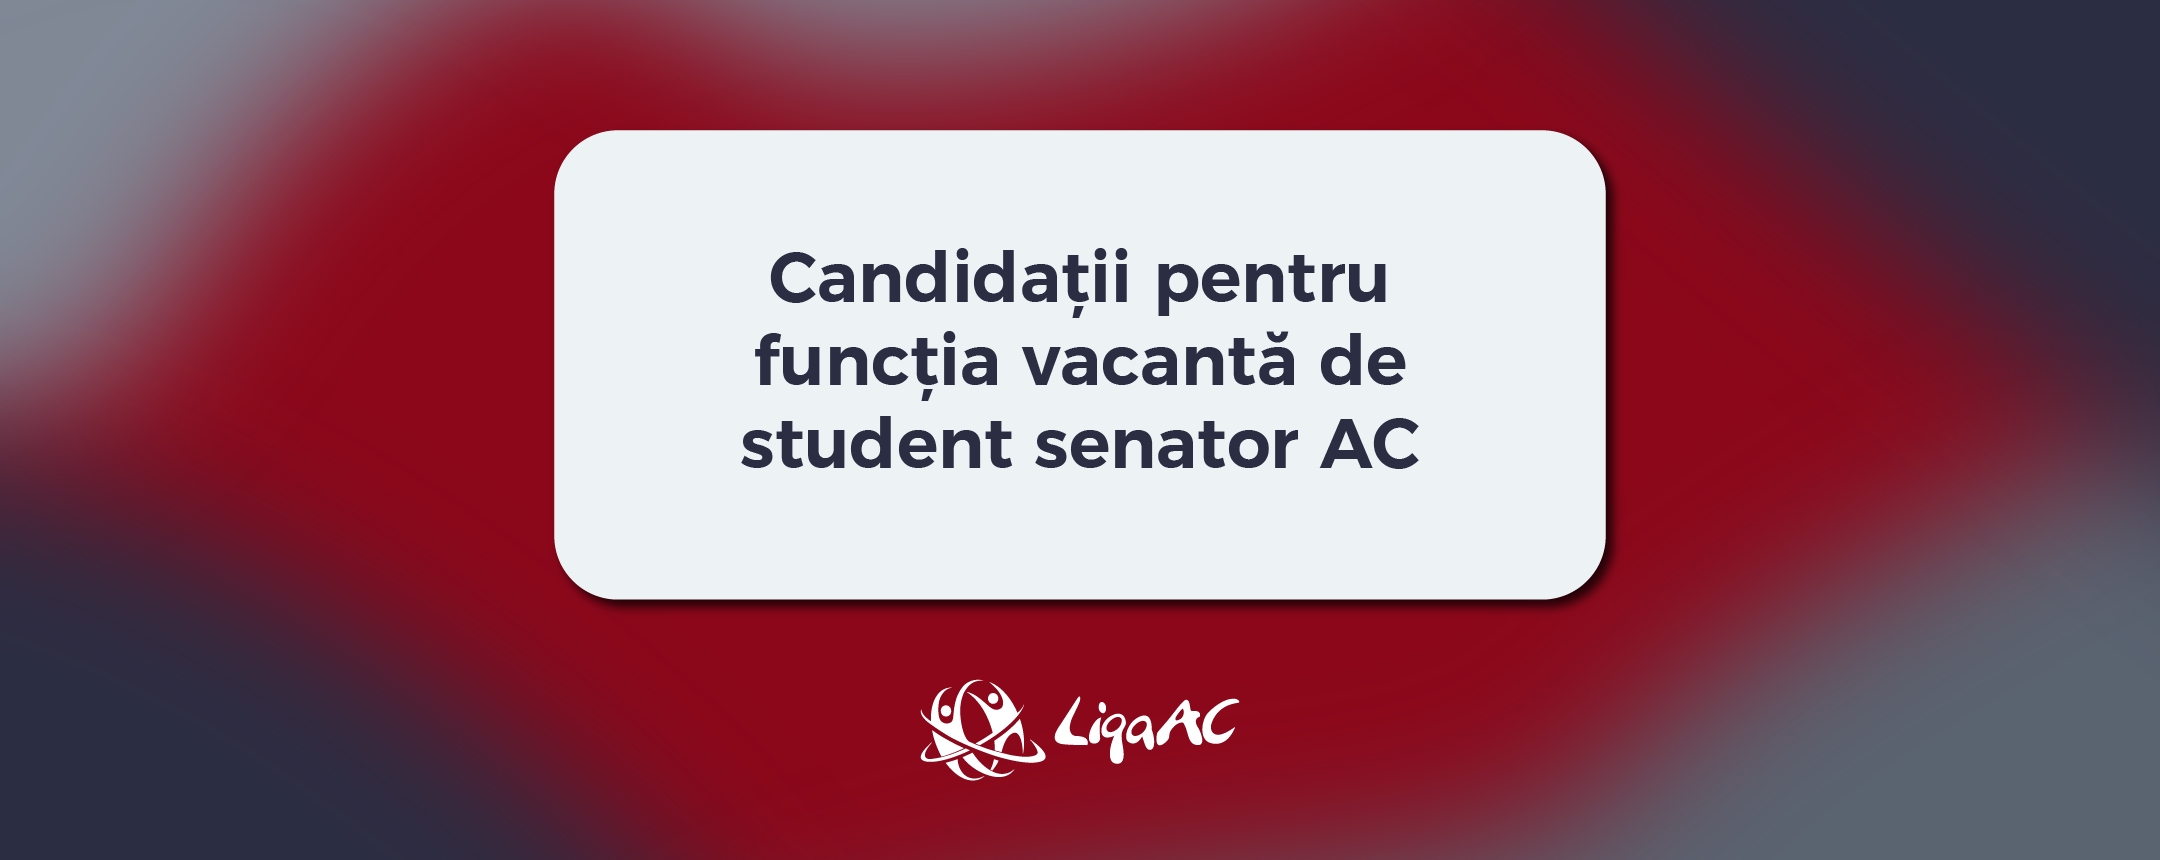 Candidaturi pentru postul de Student Senator AC